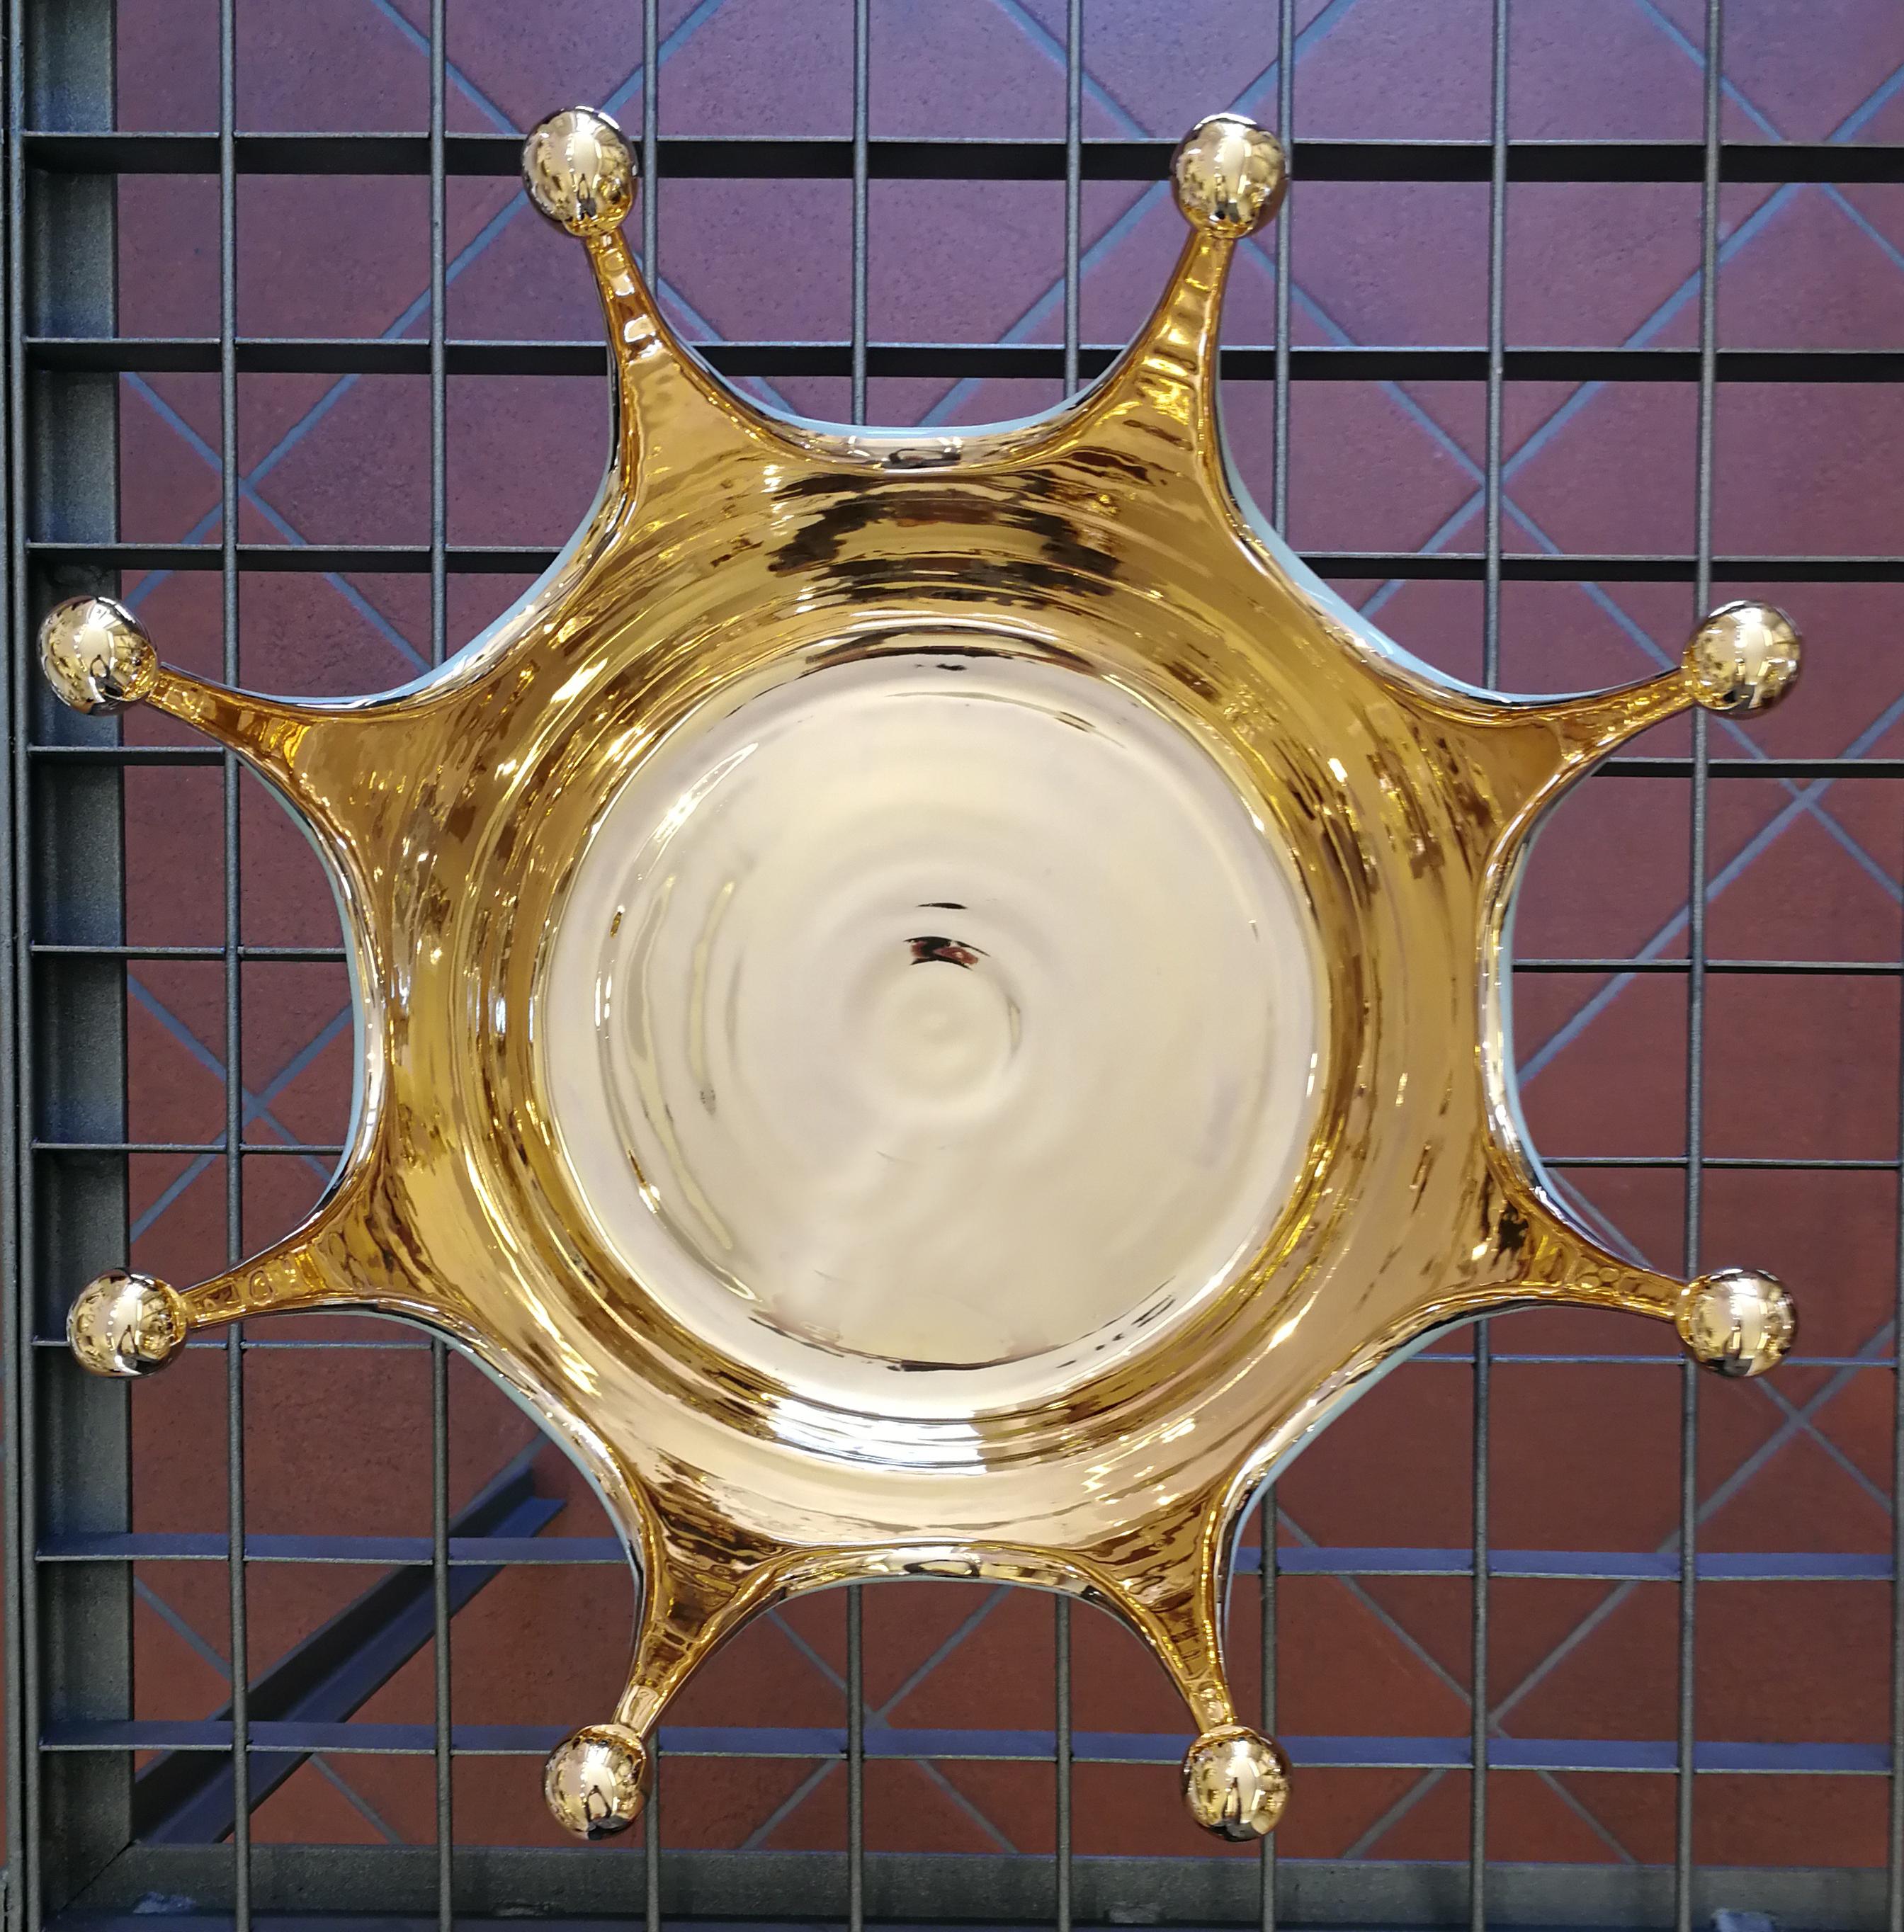 Contemporary Modern Ceramica Gatti 1928 Crown Bowl Basket Handmade Ceramic Gold Platinum Gems For Sale